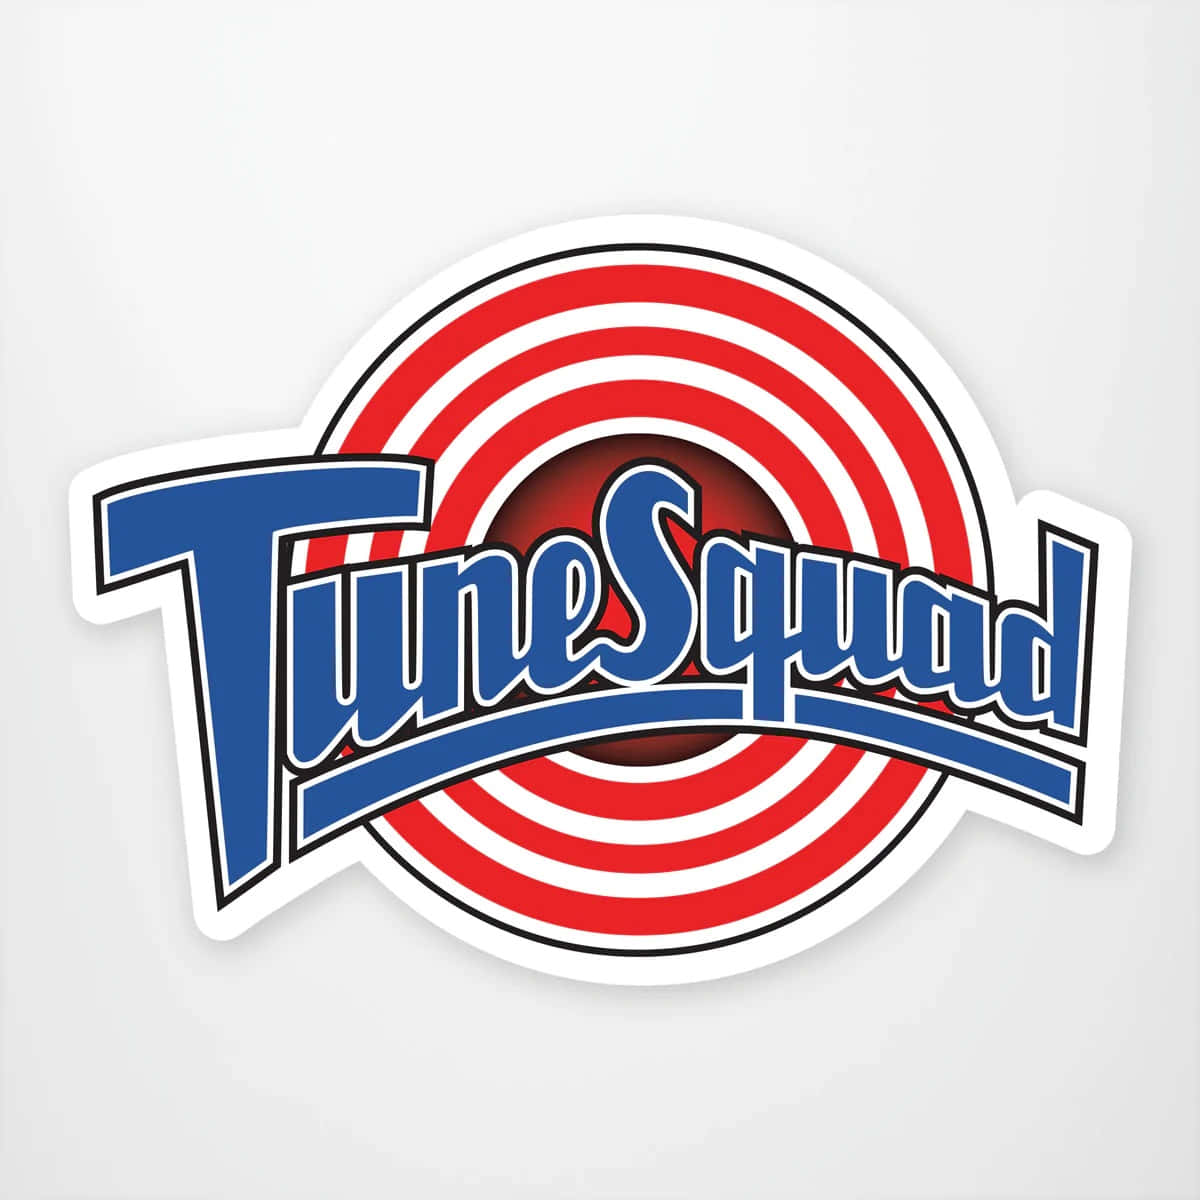 Tune squad